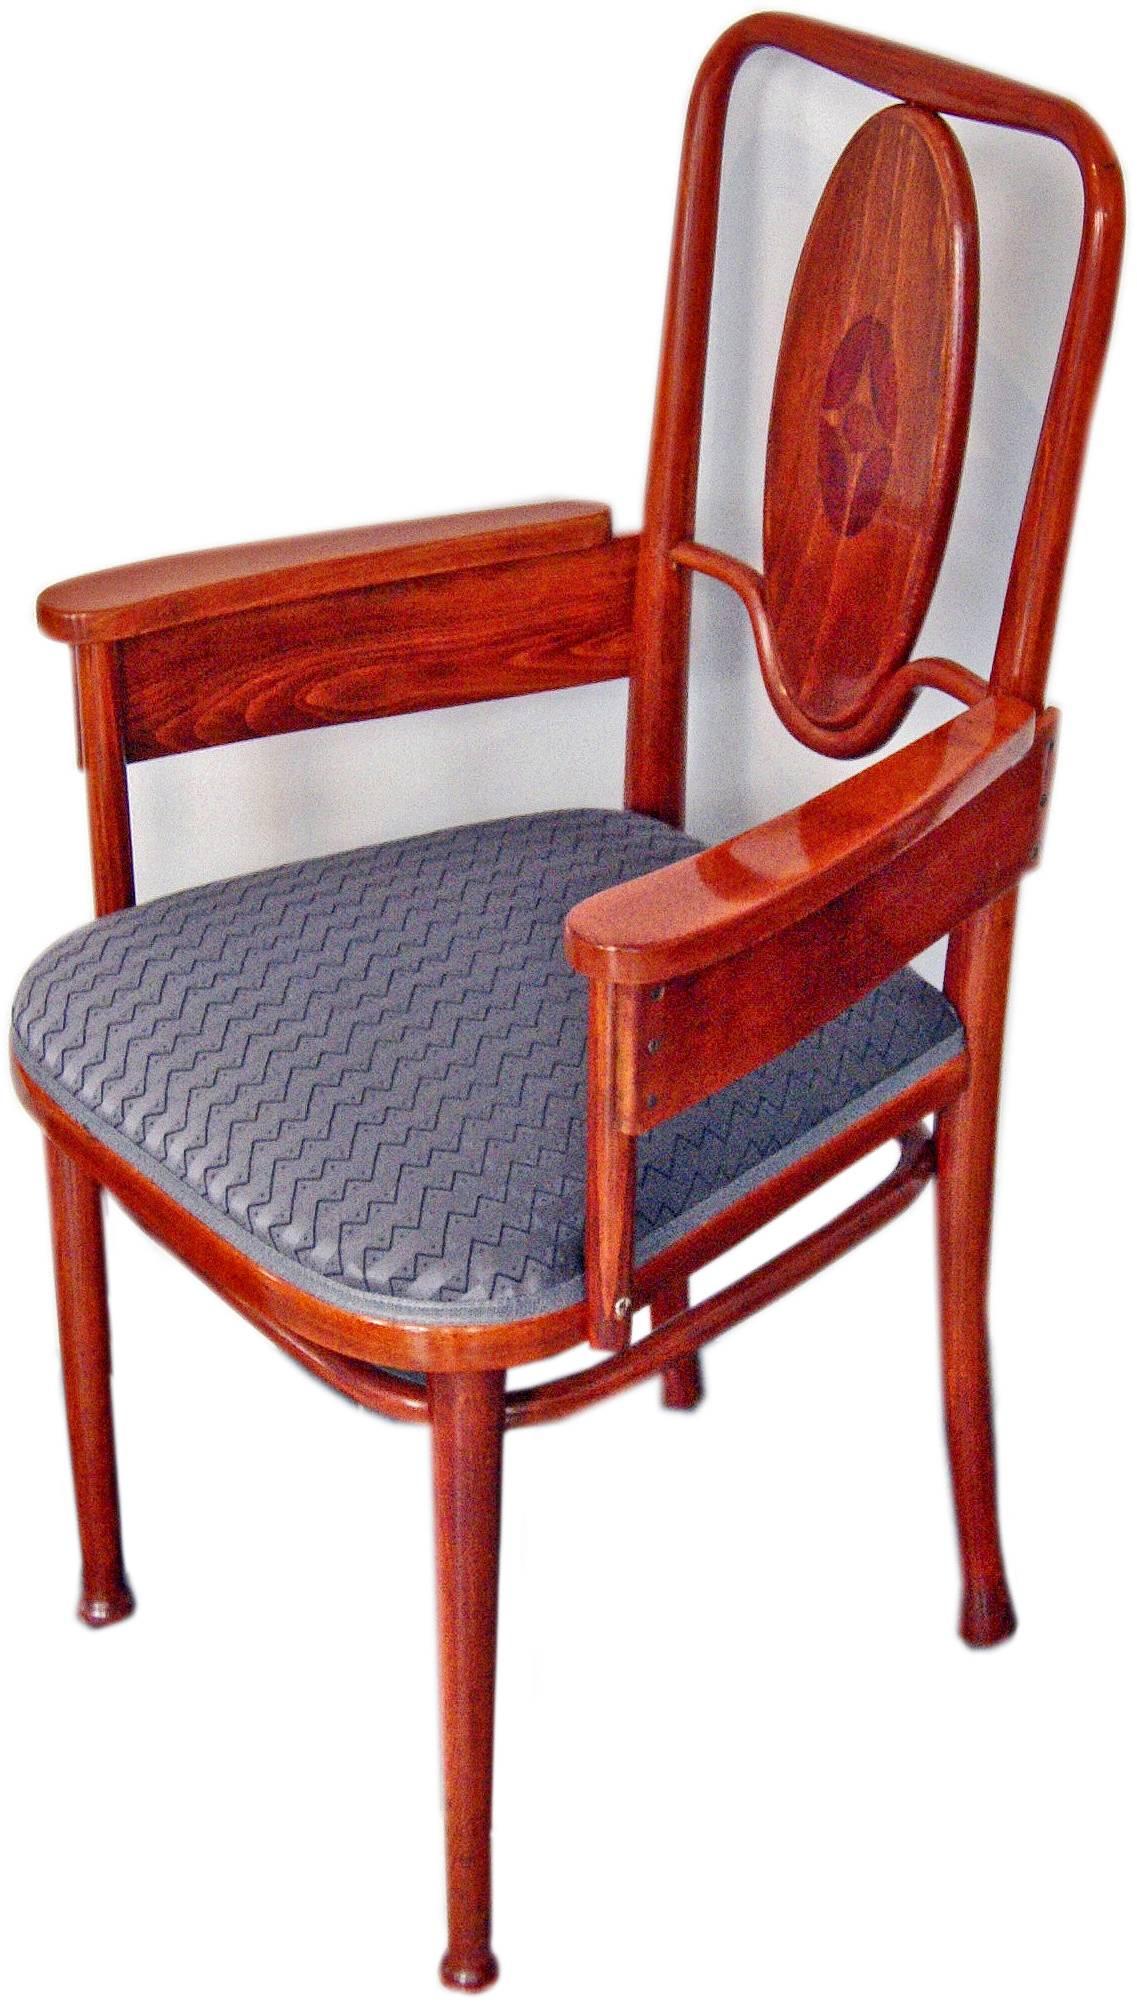 Thonet Vienna elegantester Sessel

Bitte beachten Sie: Zwei Sessel sind verfügbar !

Dieser Sessel ist das Thonet-Modell Nummer 414. 
Ähnlicher Entwurf von Marcel Kammerer aus dem Jahr 1904 im Auftrag des Hotels Wiesler in Graz (Steiermark::